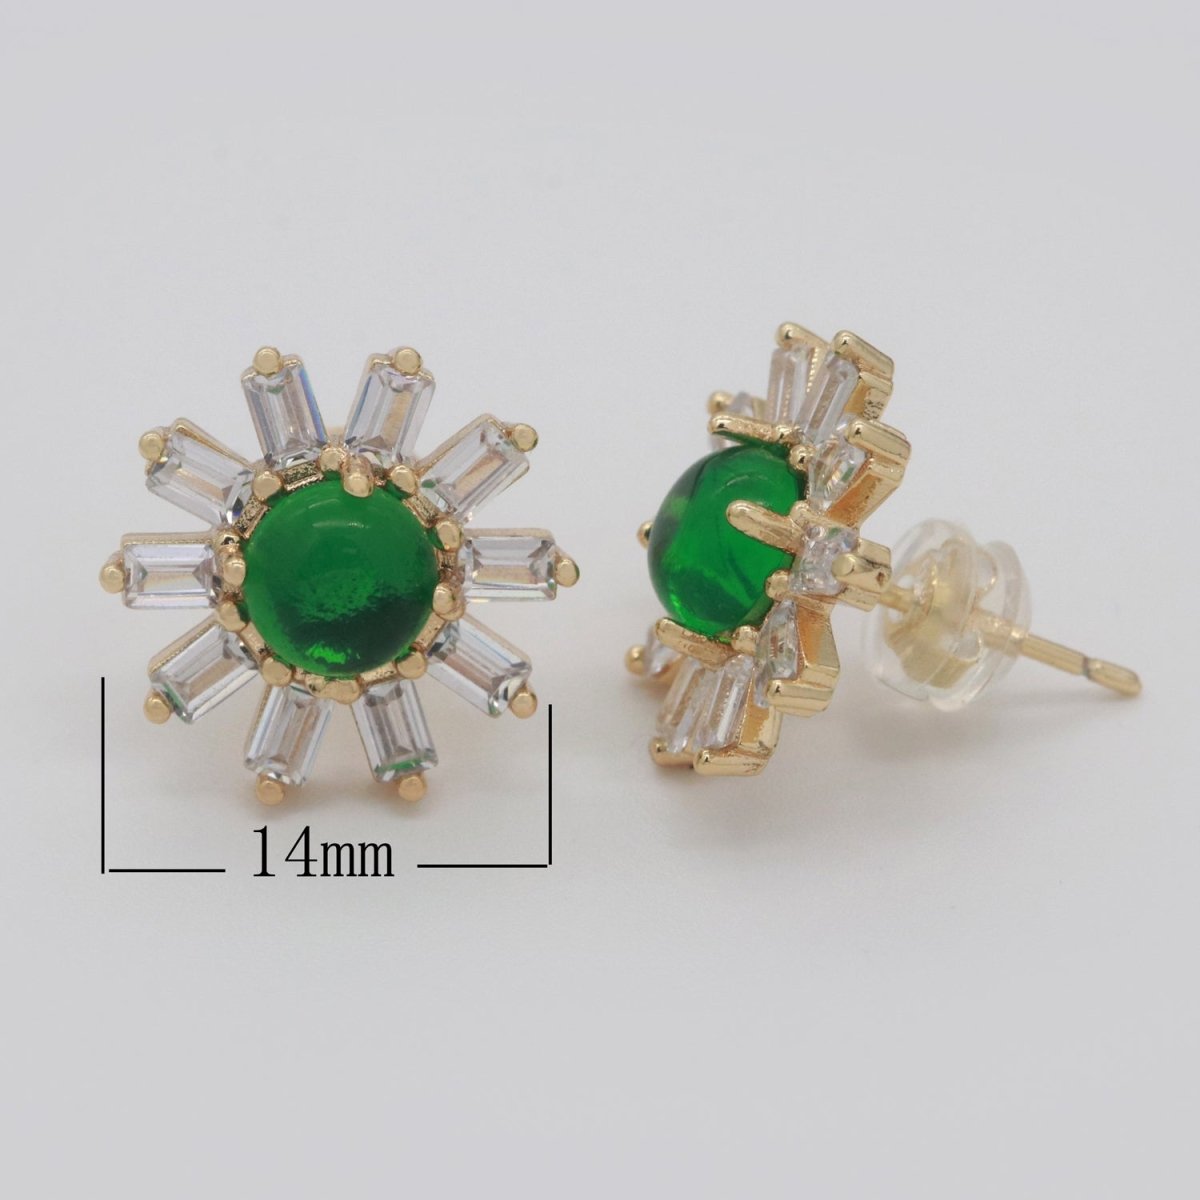 Clear Studs, Dainty Green Zirconia Earrings, Cz Stud Earrings, Sun Earrings, Tiny Diamond Stud Earrings, Small Gold Earring T-162 - DLUXCA